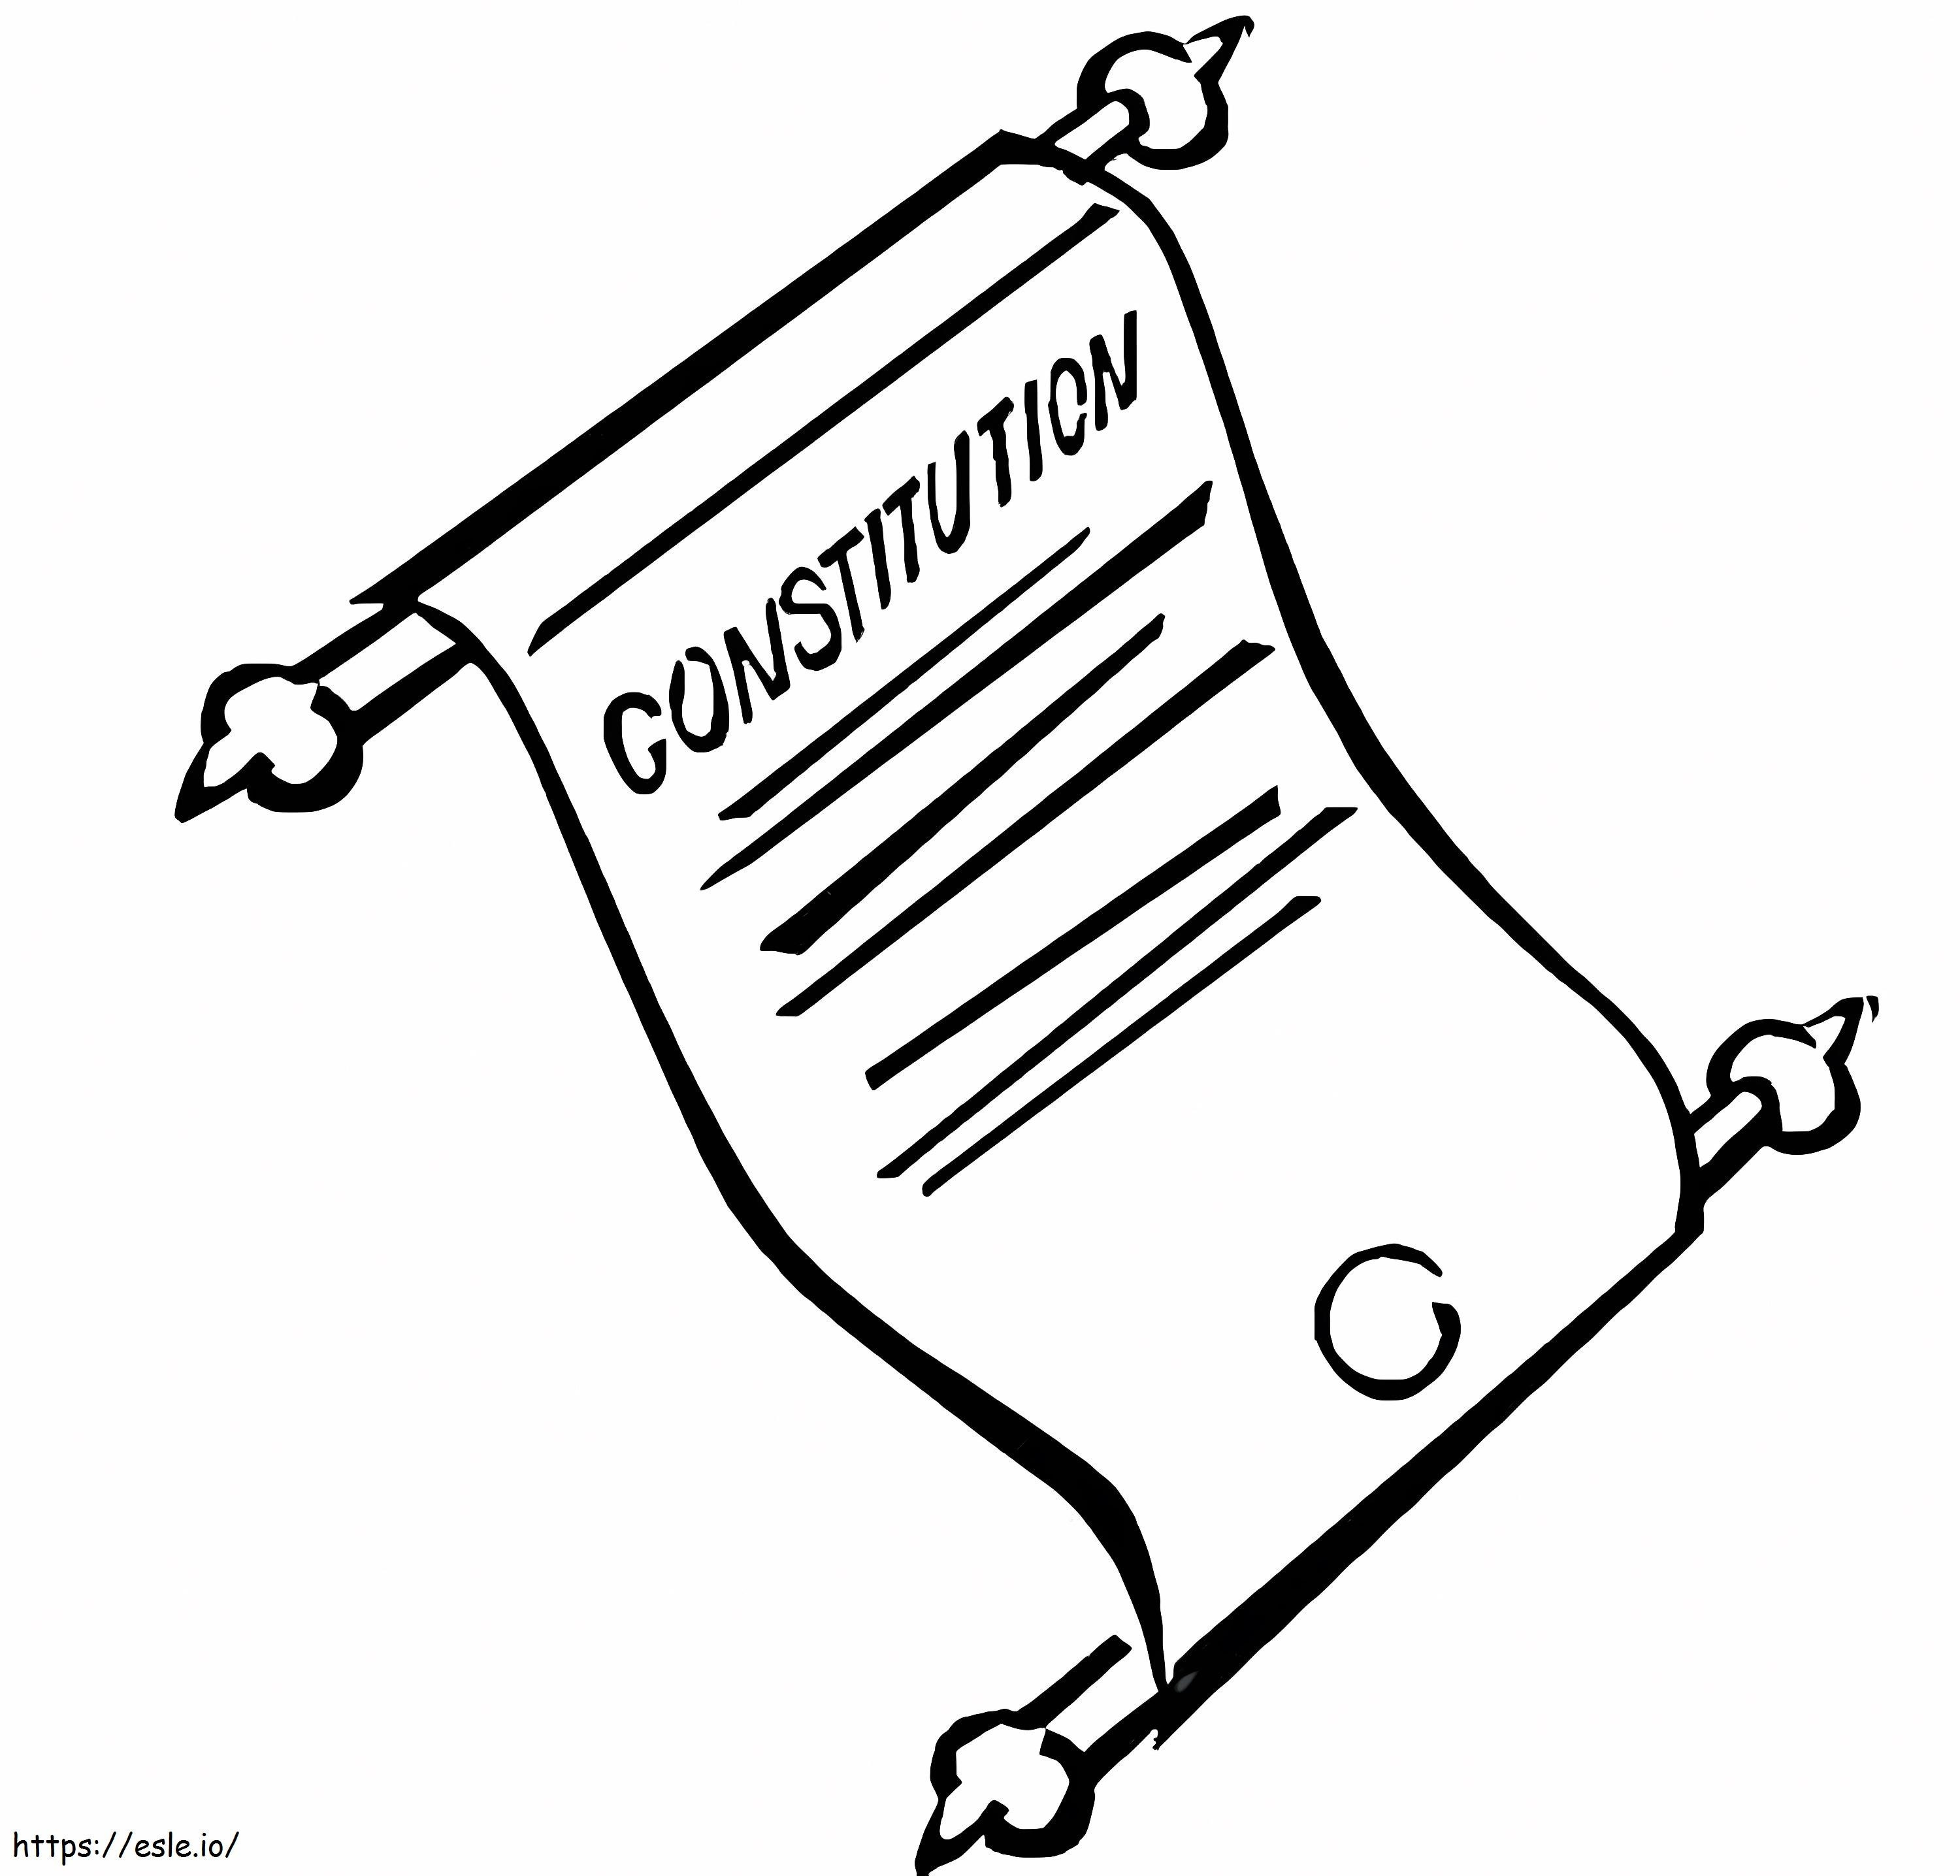 Costituzione da colorare